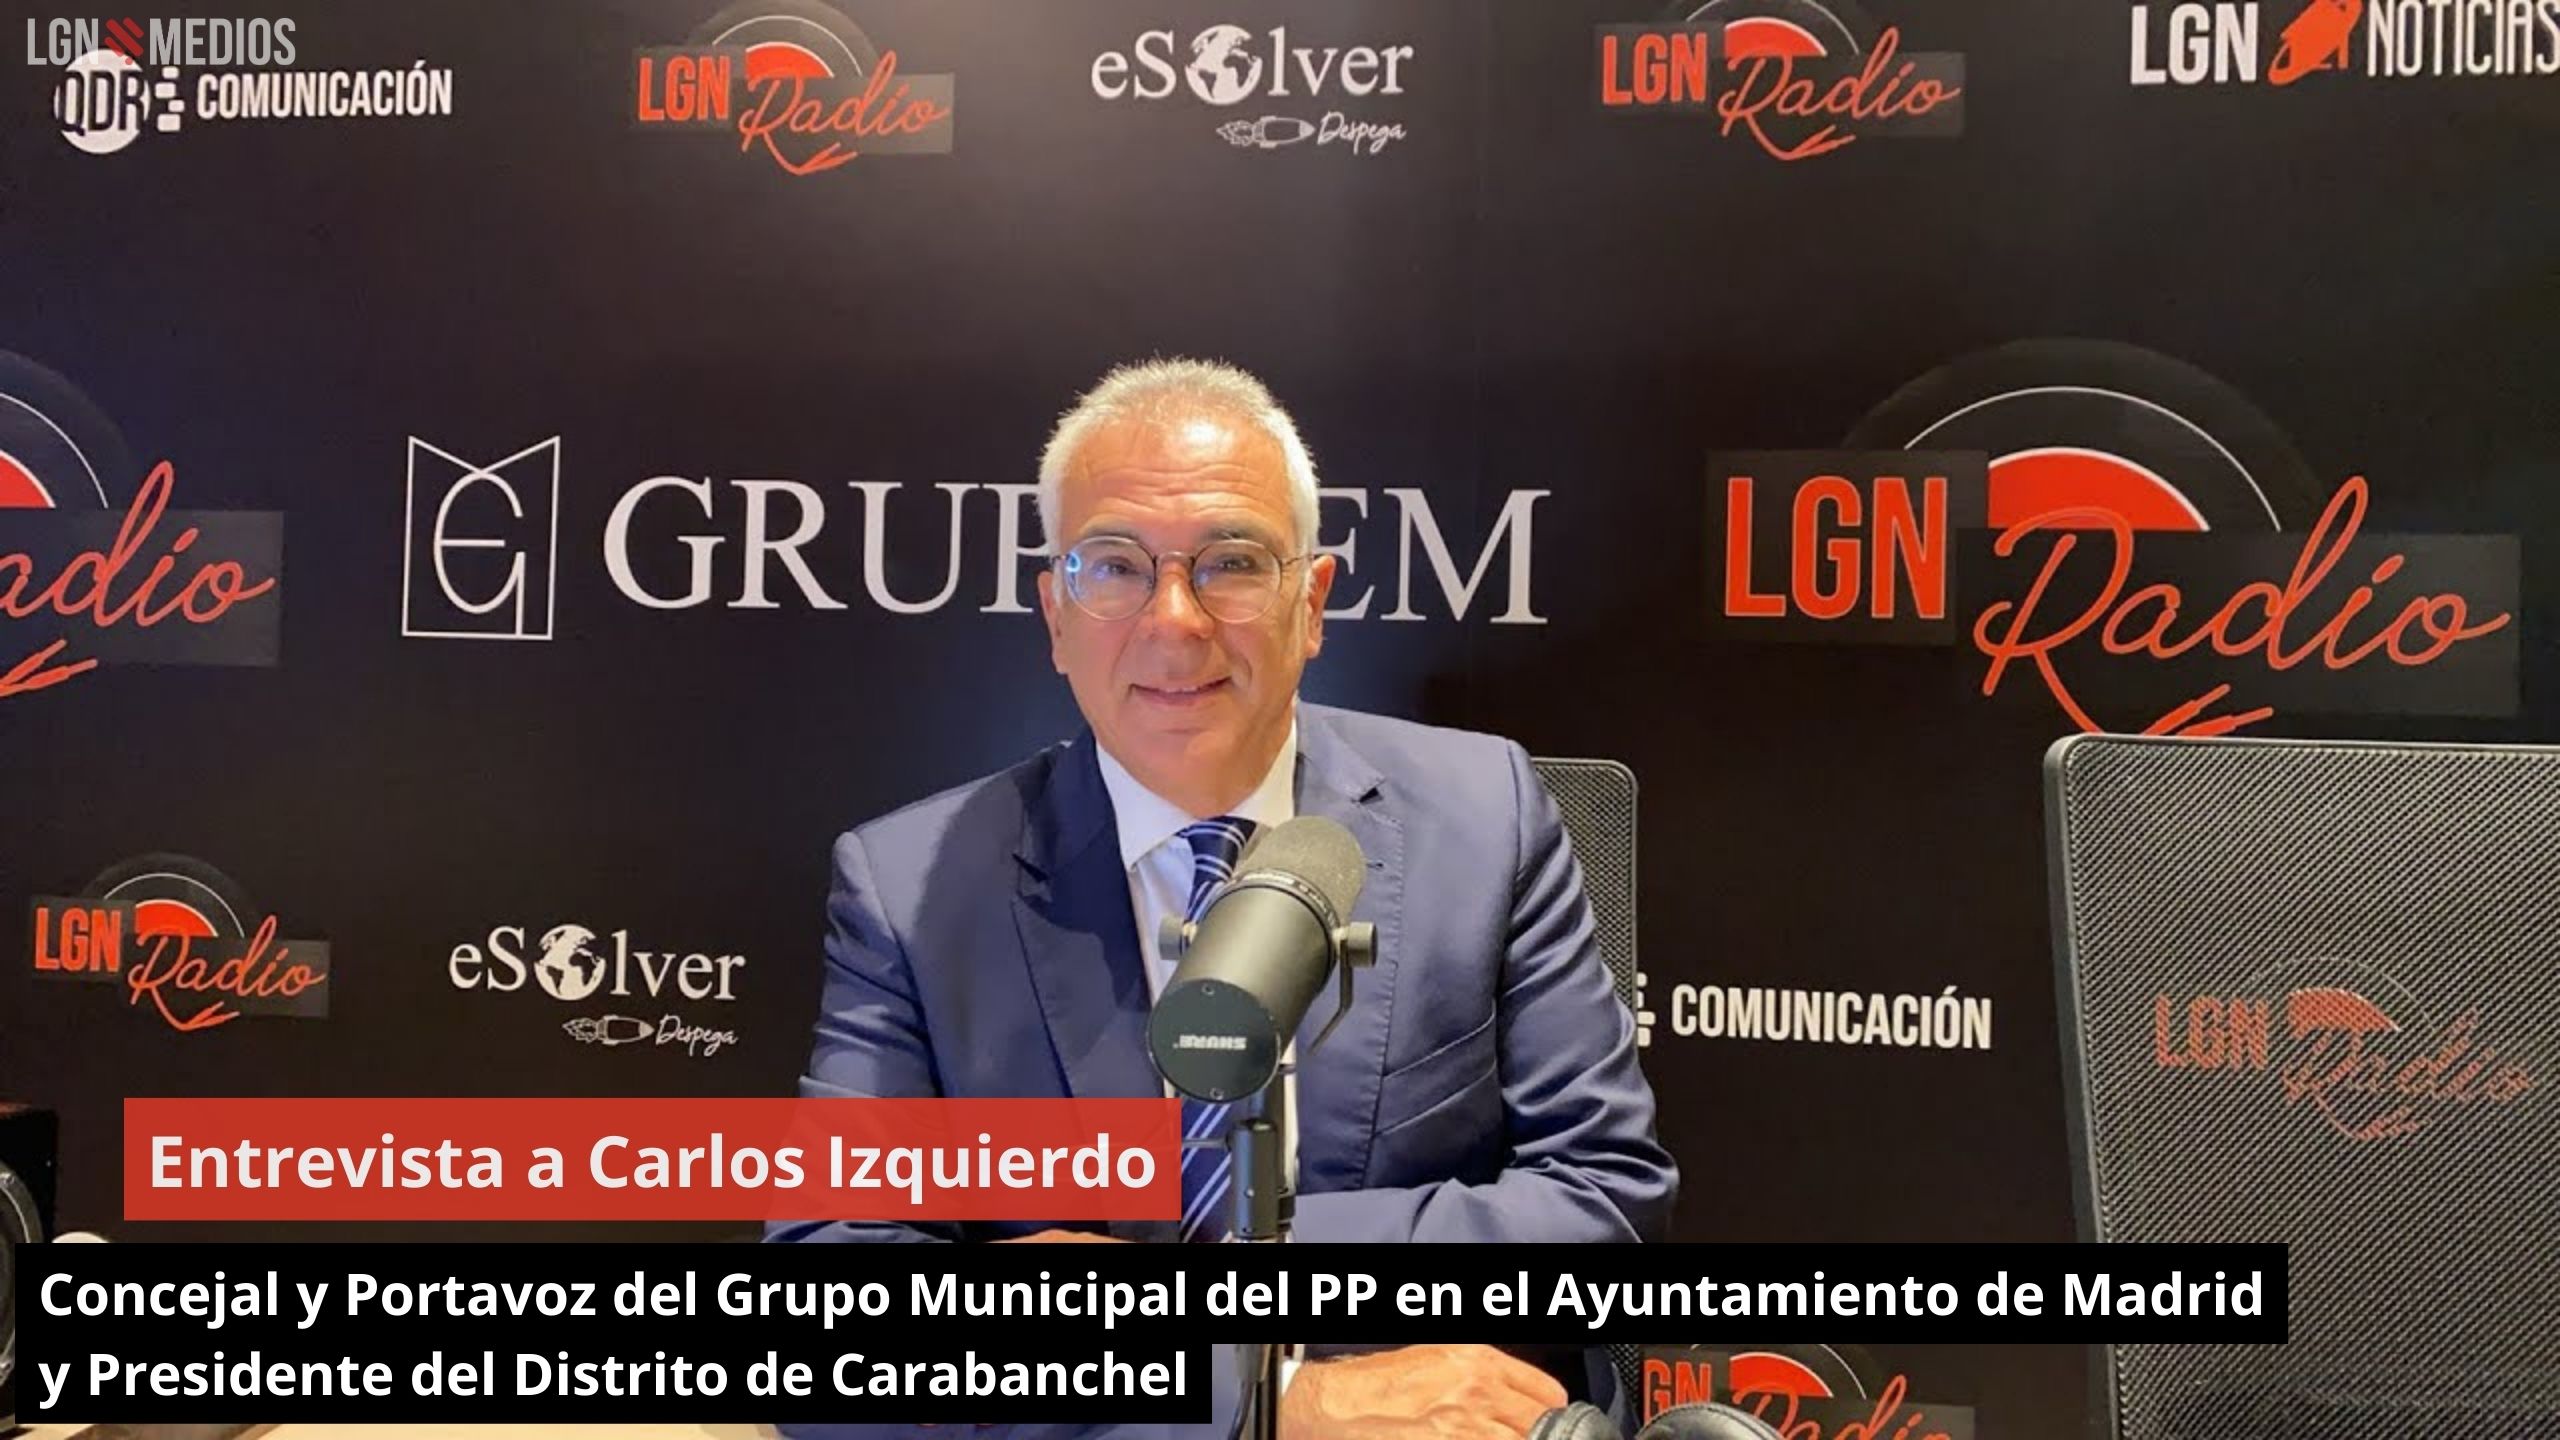 Carlos Izquierdo. Concejal y Portavoz del Grupo Municipal del PP en el Ayto de Madrid